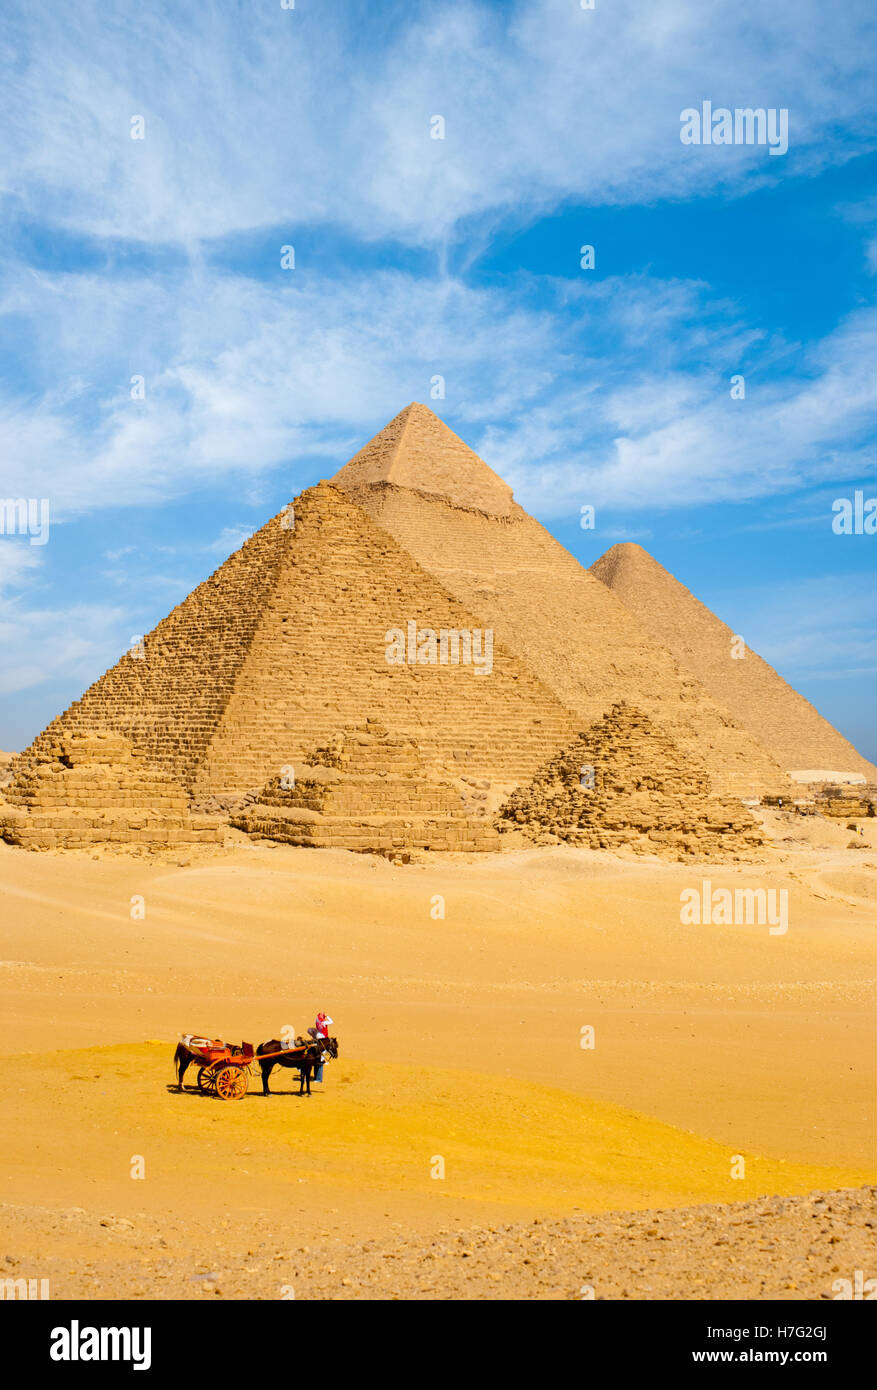 Un groupe de touristes démonter leur charrette à cheval voir tous les pyramides égyptiennes ensemble sur un jour nuageux vaporeux au Caire, Egypte Banque D'Images